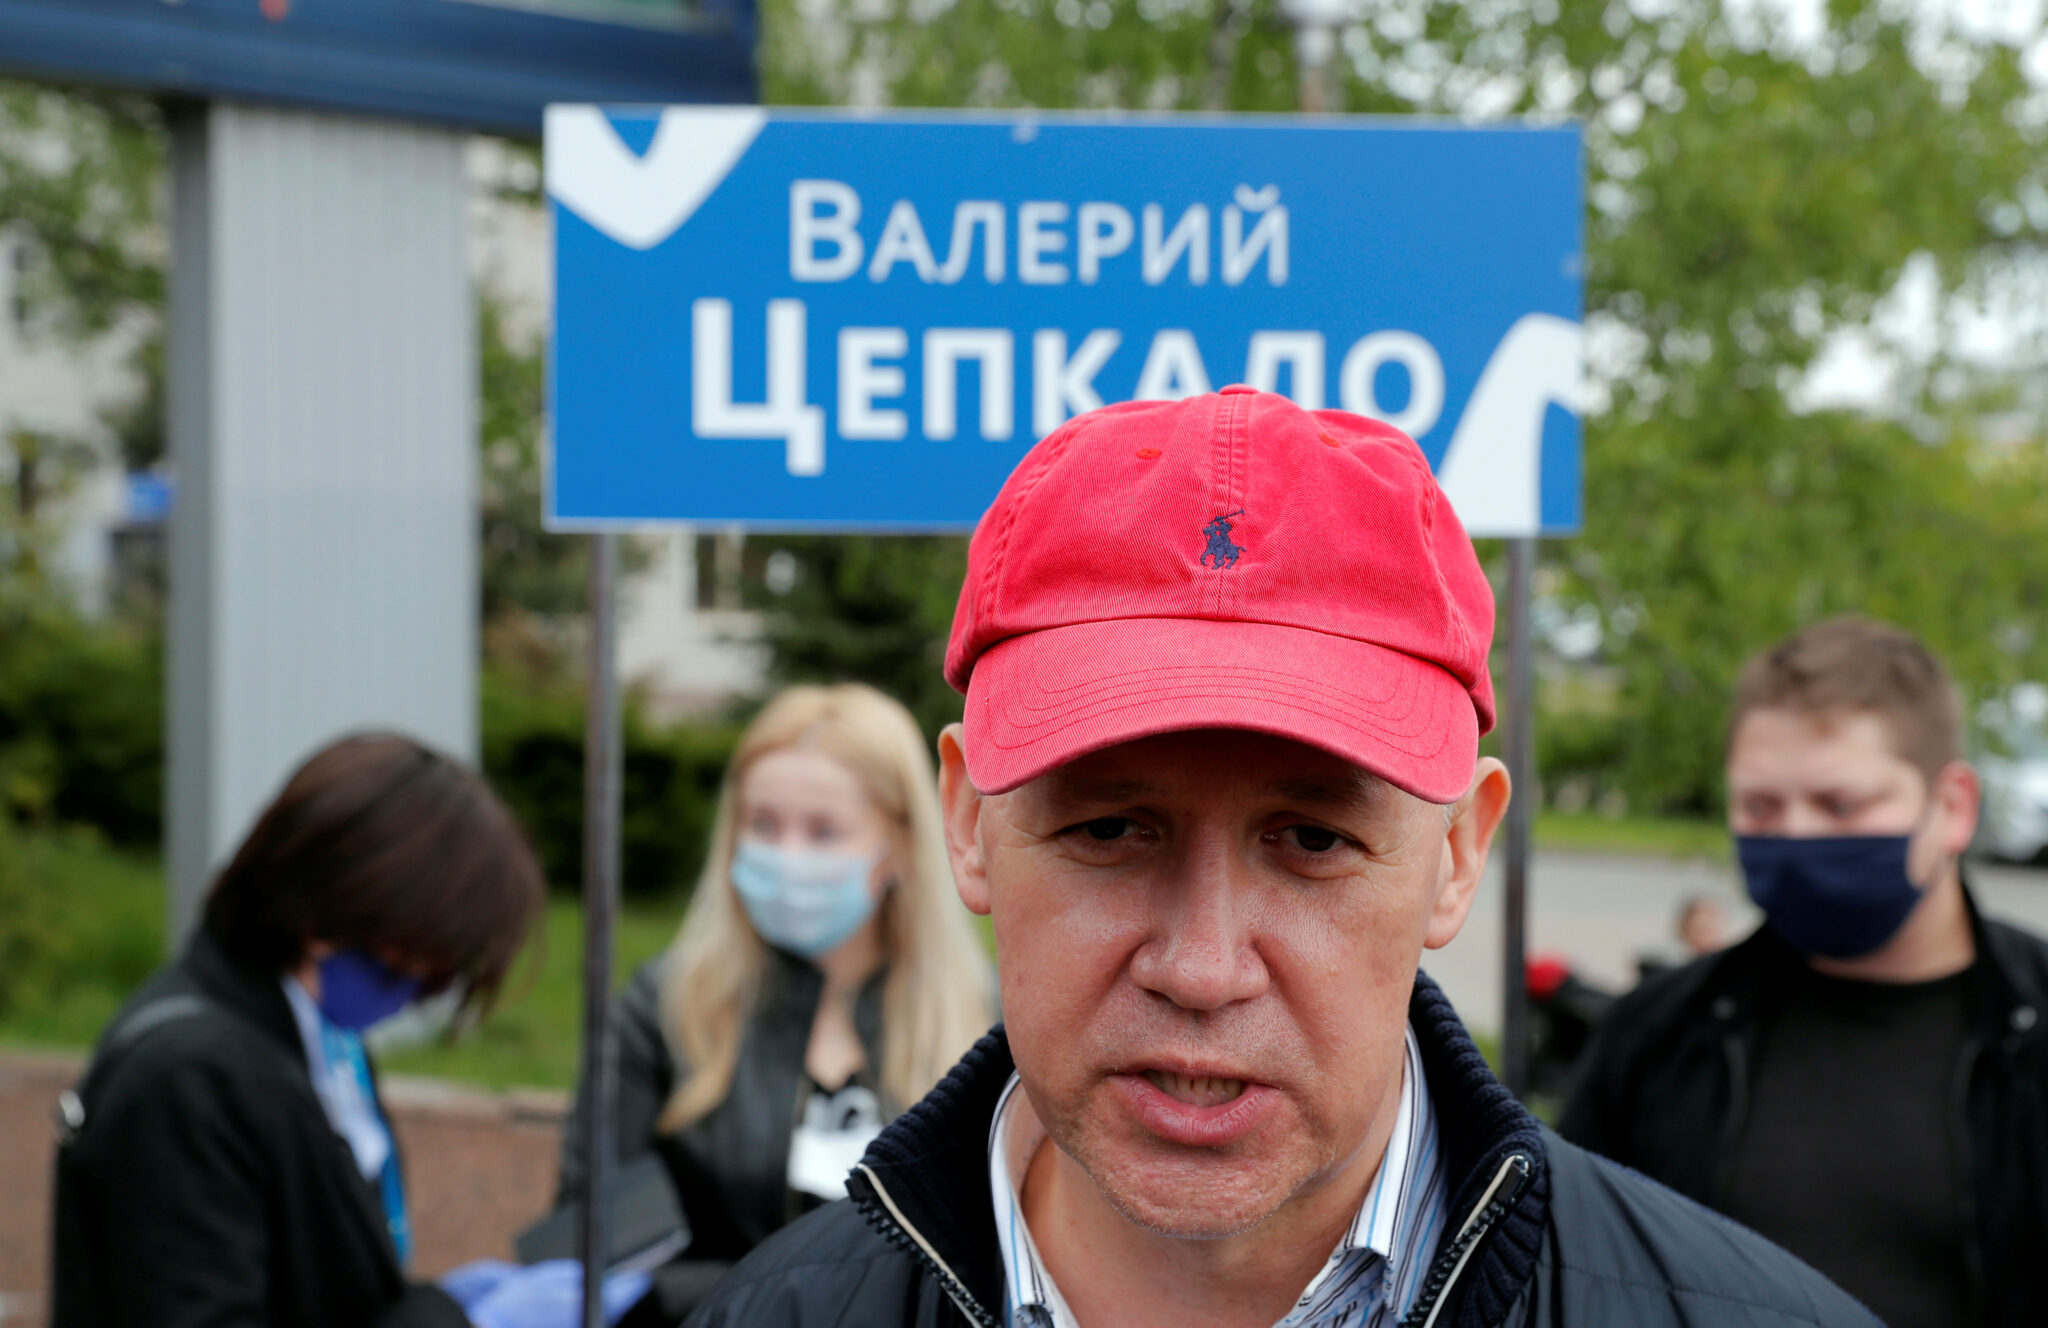 Валерий Цепкало. Фото REUTERS/Vasily Fedosenko/Scanpix/Leta